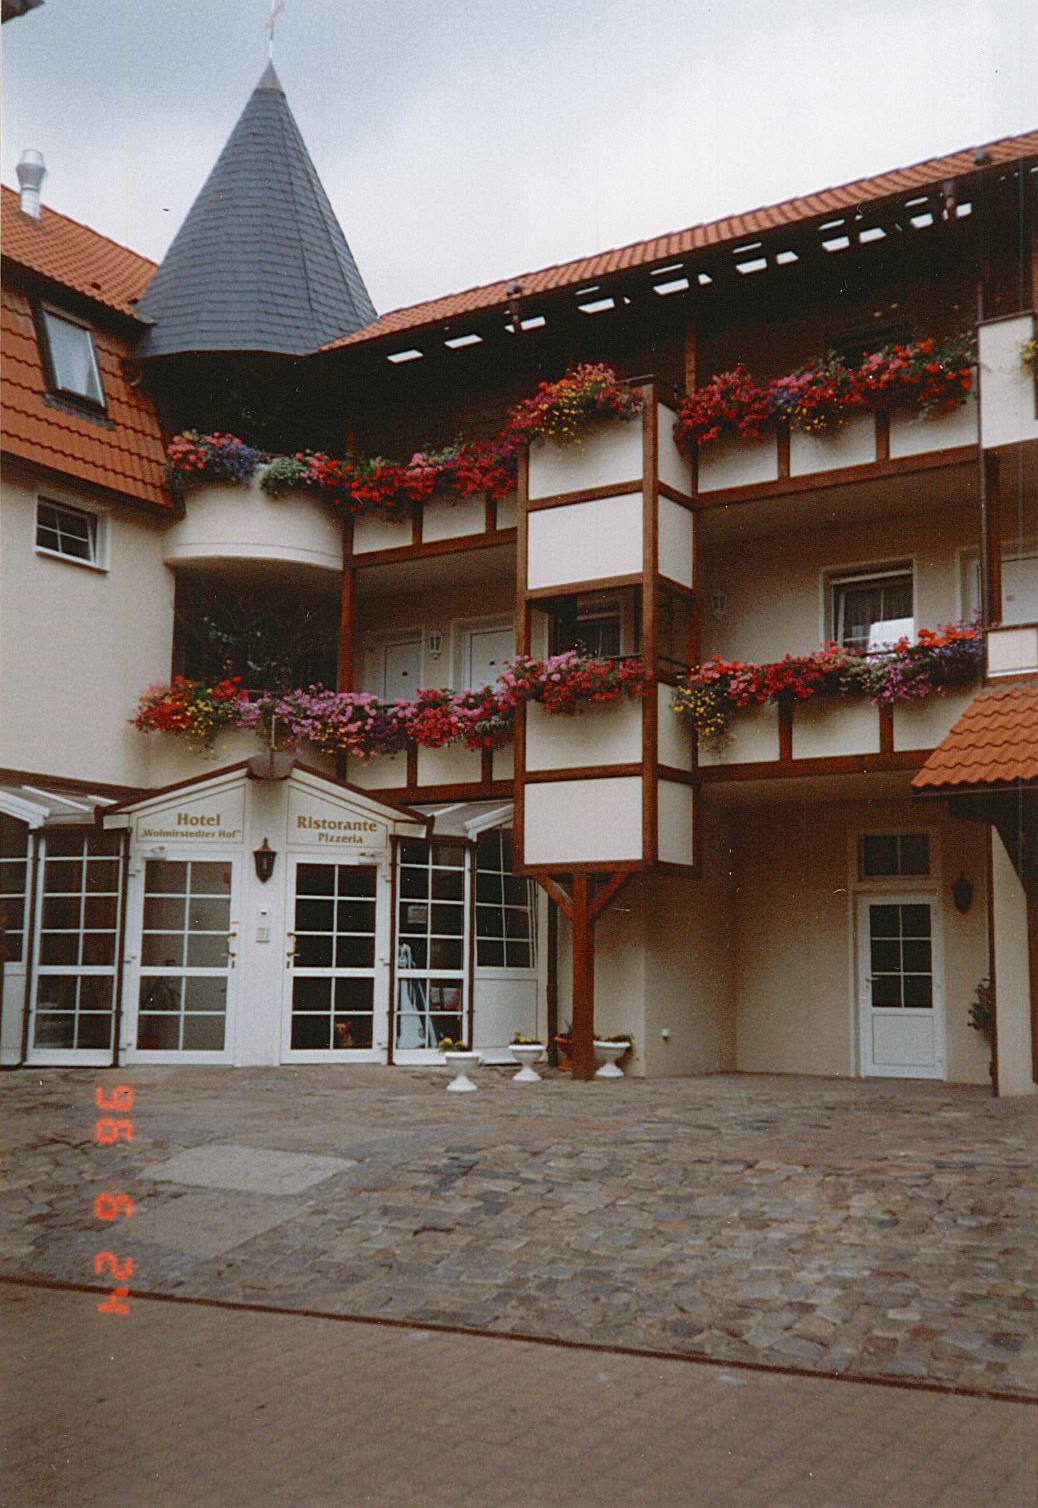 Stadtansicht Wolmirstedt - Hotel "Wolmirstedter Hof", 24.06.1996 (Museum Wolmirstedt RR-F)